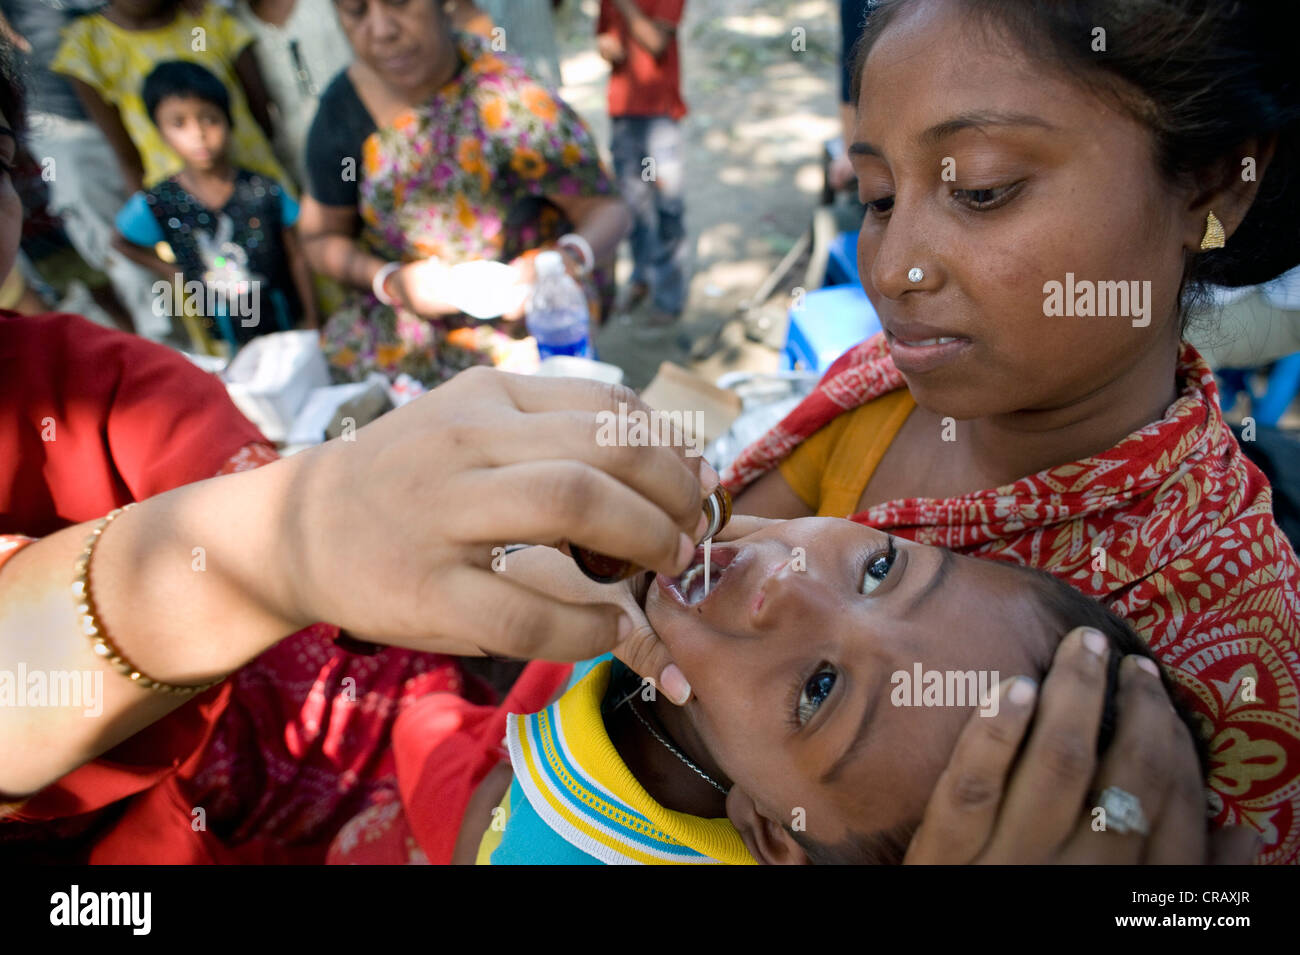 Donna con bambino piccolo, campagna di vaccinazione per i bambini dal tedesco medici per i Paesi in via di sviluppo a Calcutta, , India Foto Stock